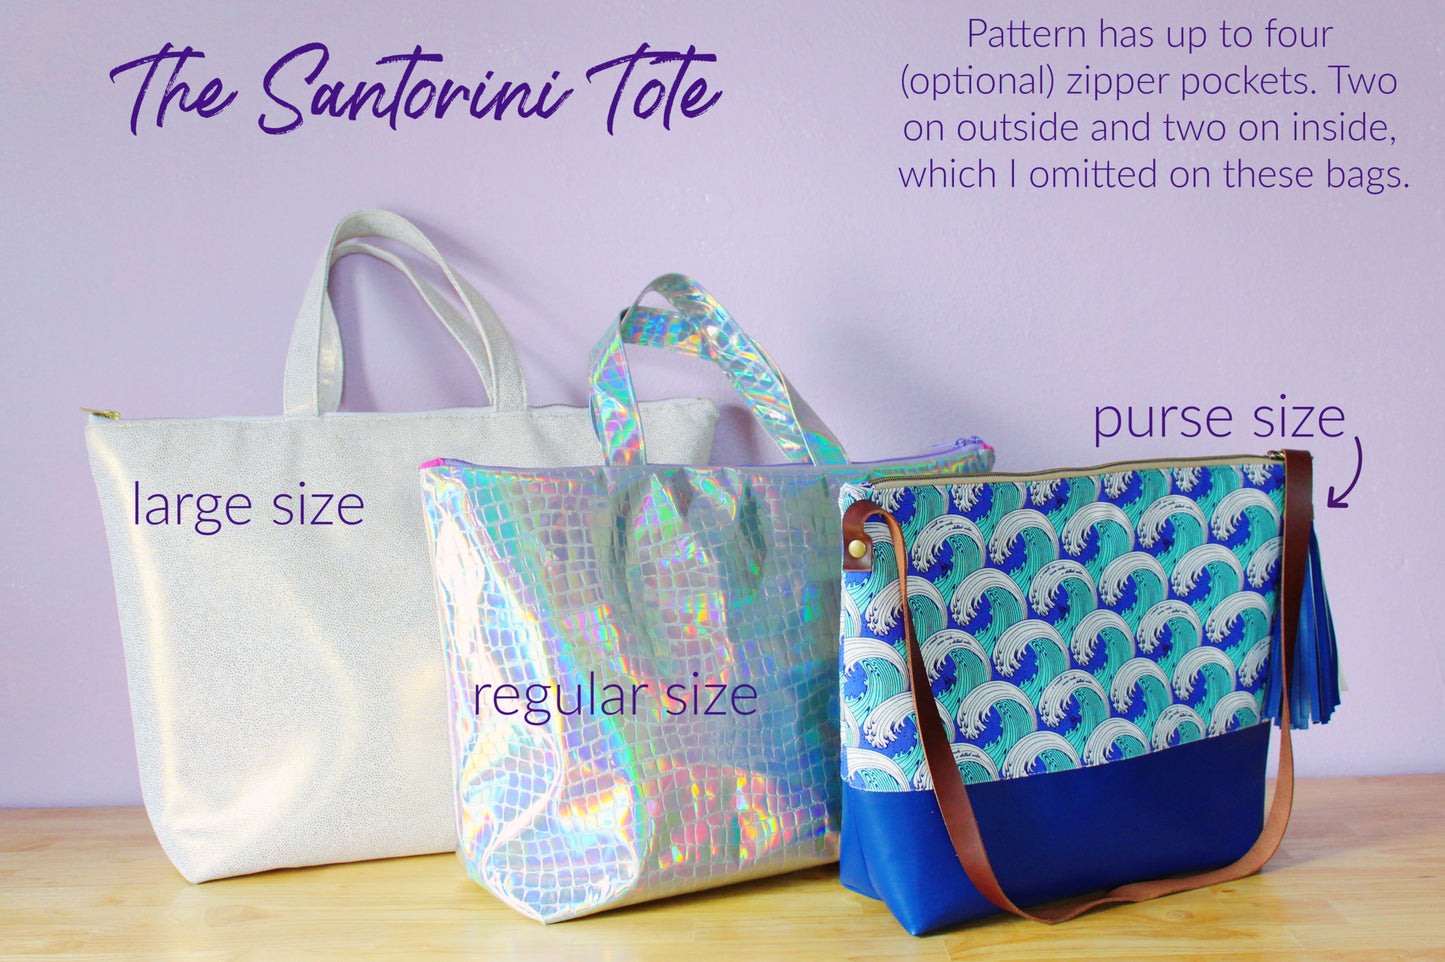 Santorini Tote printed pattern